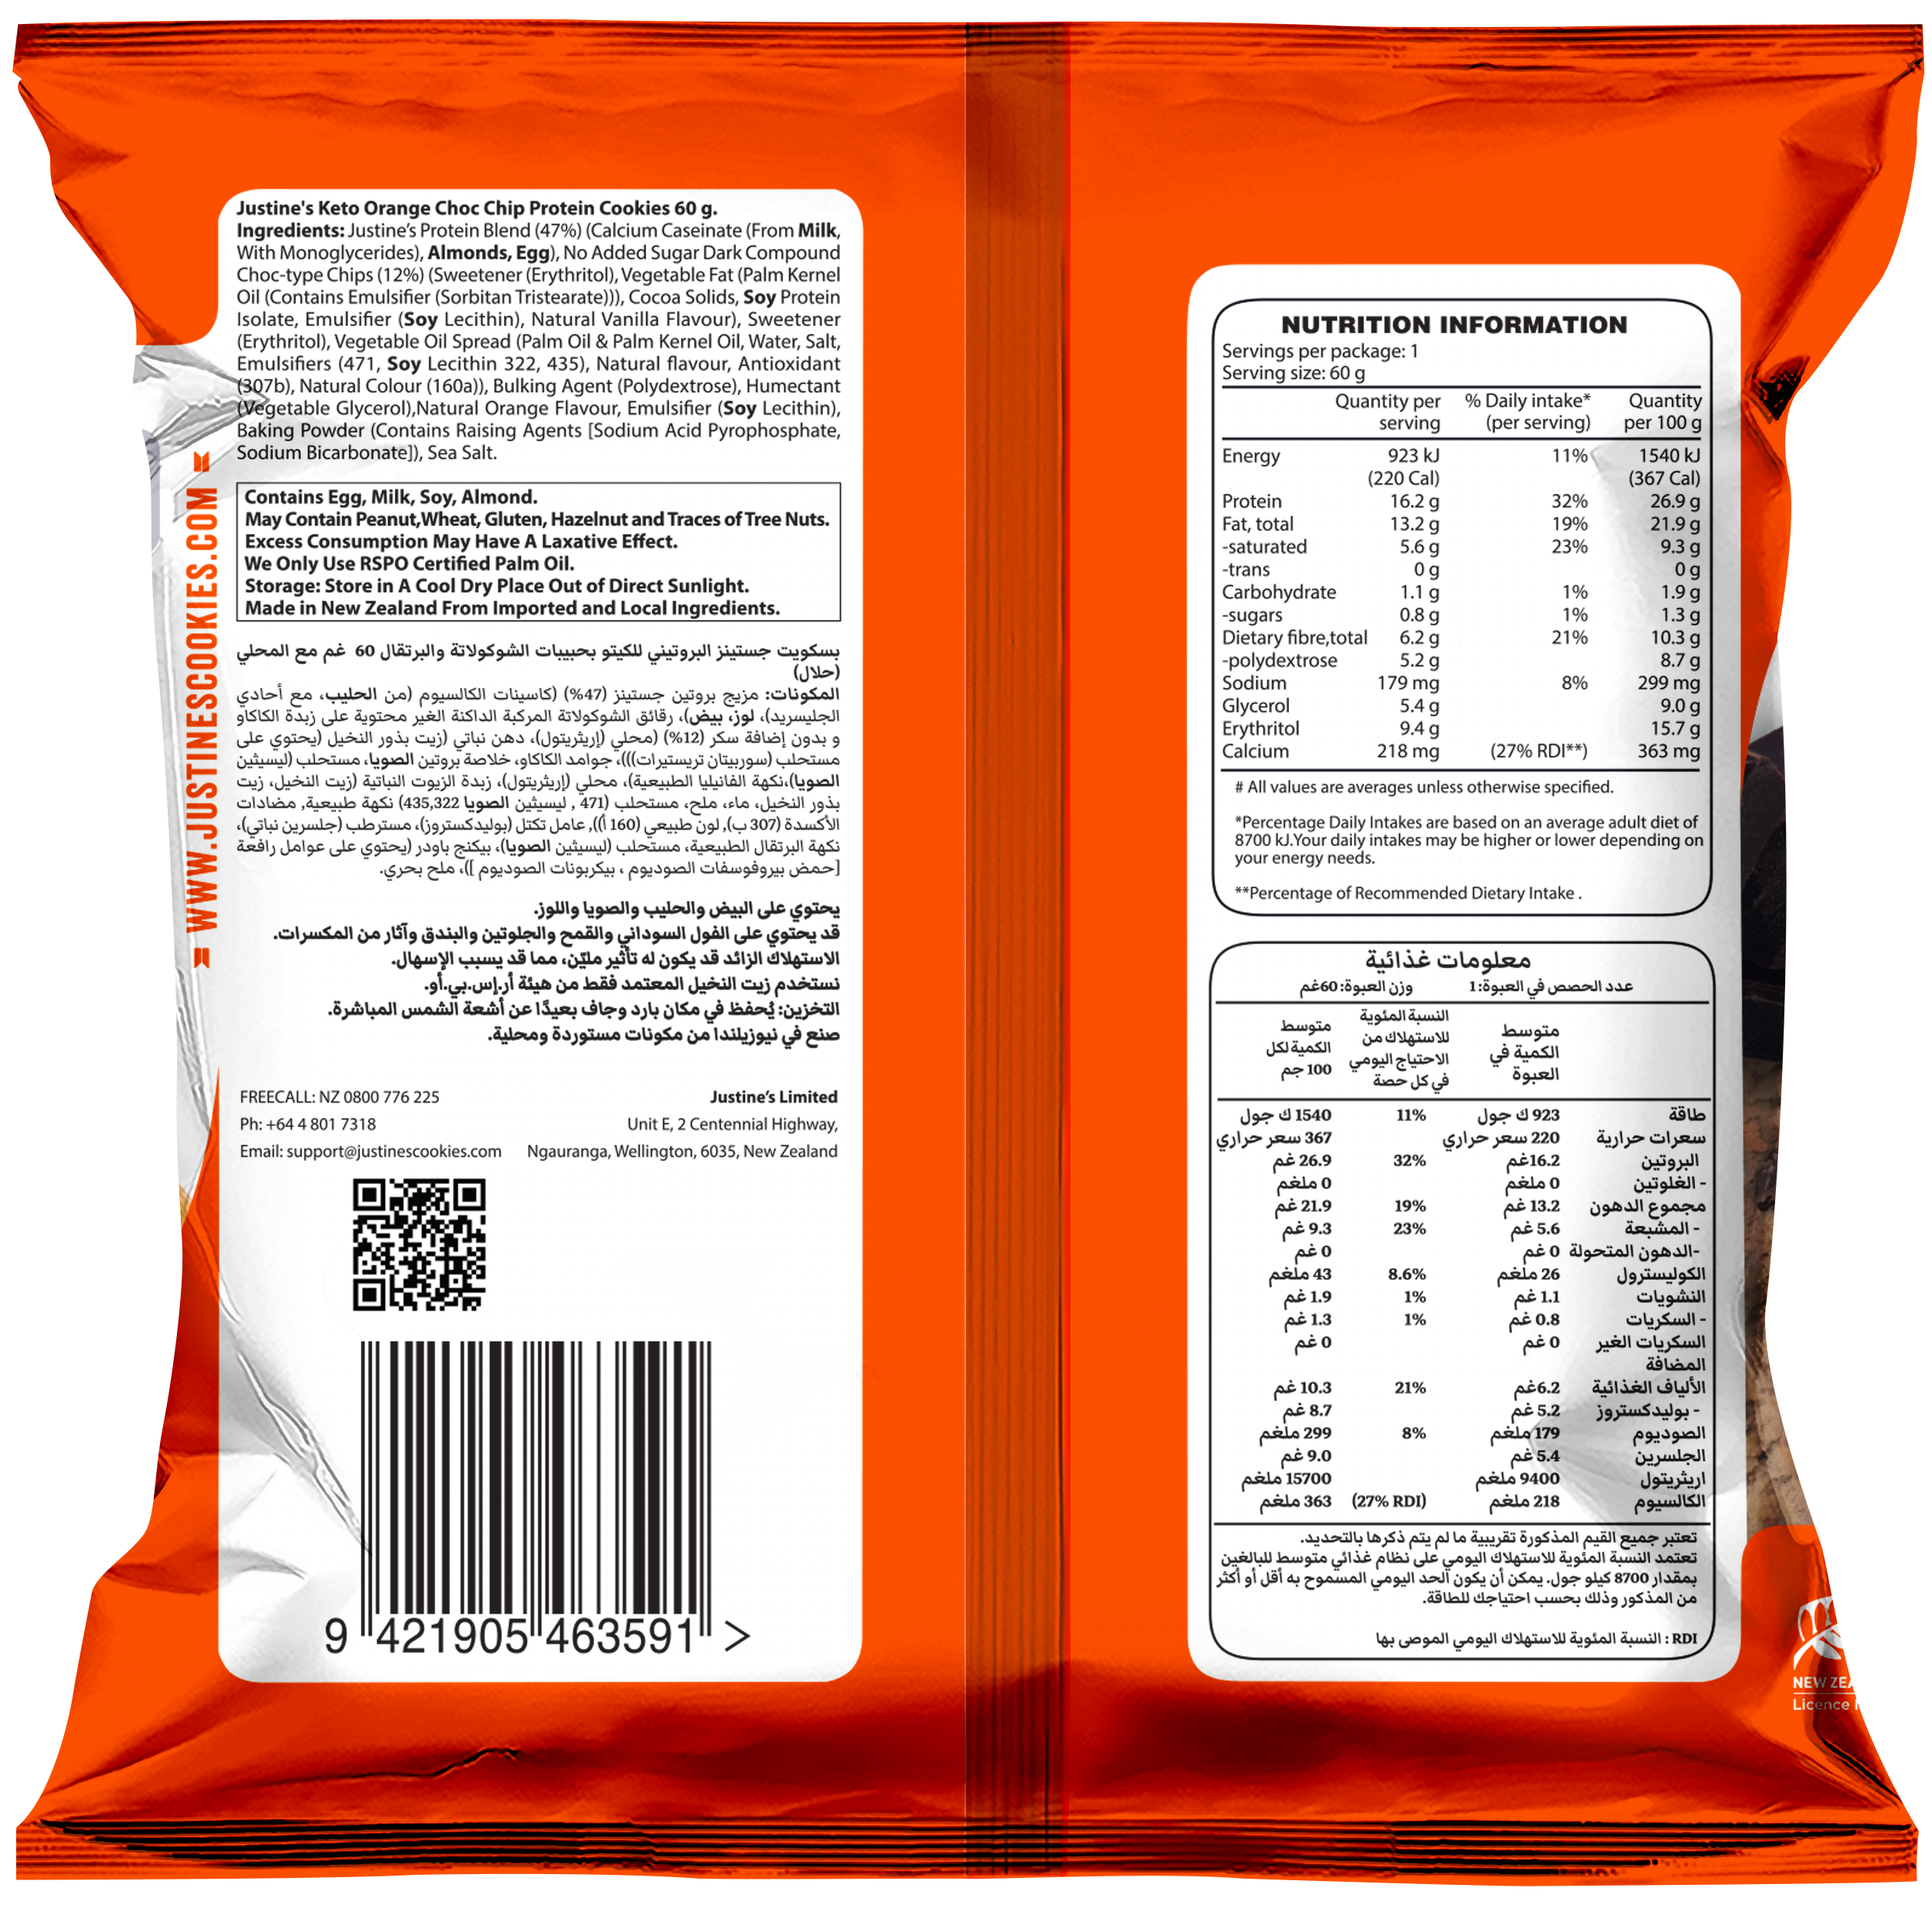 Orange Dark Choc Chip Keto Protein Cookie